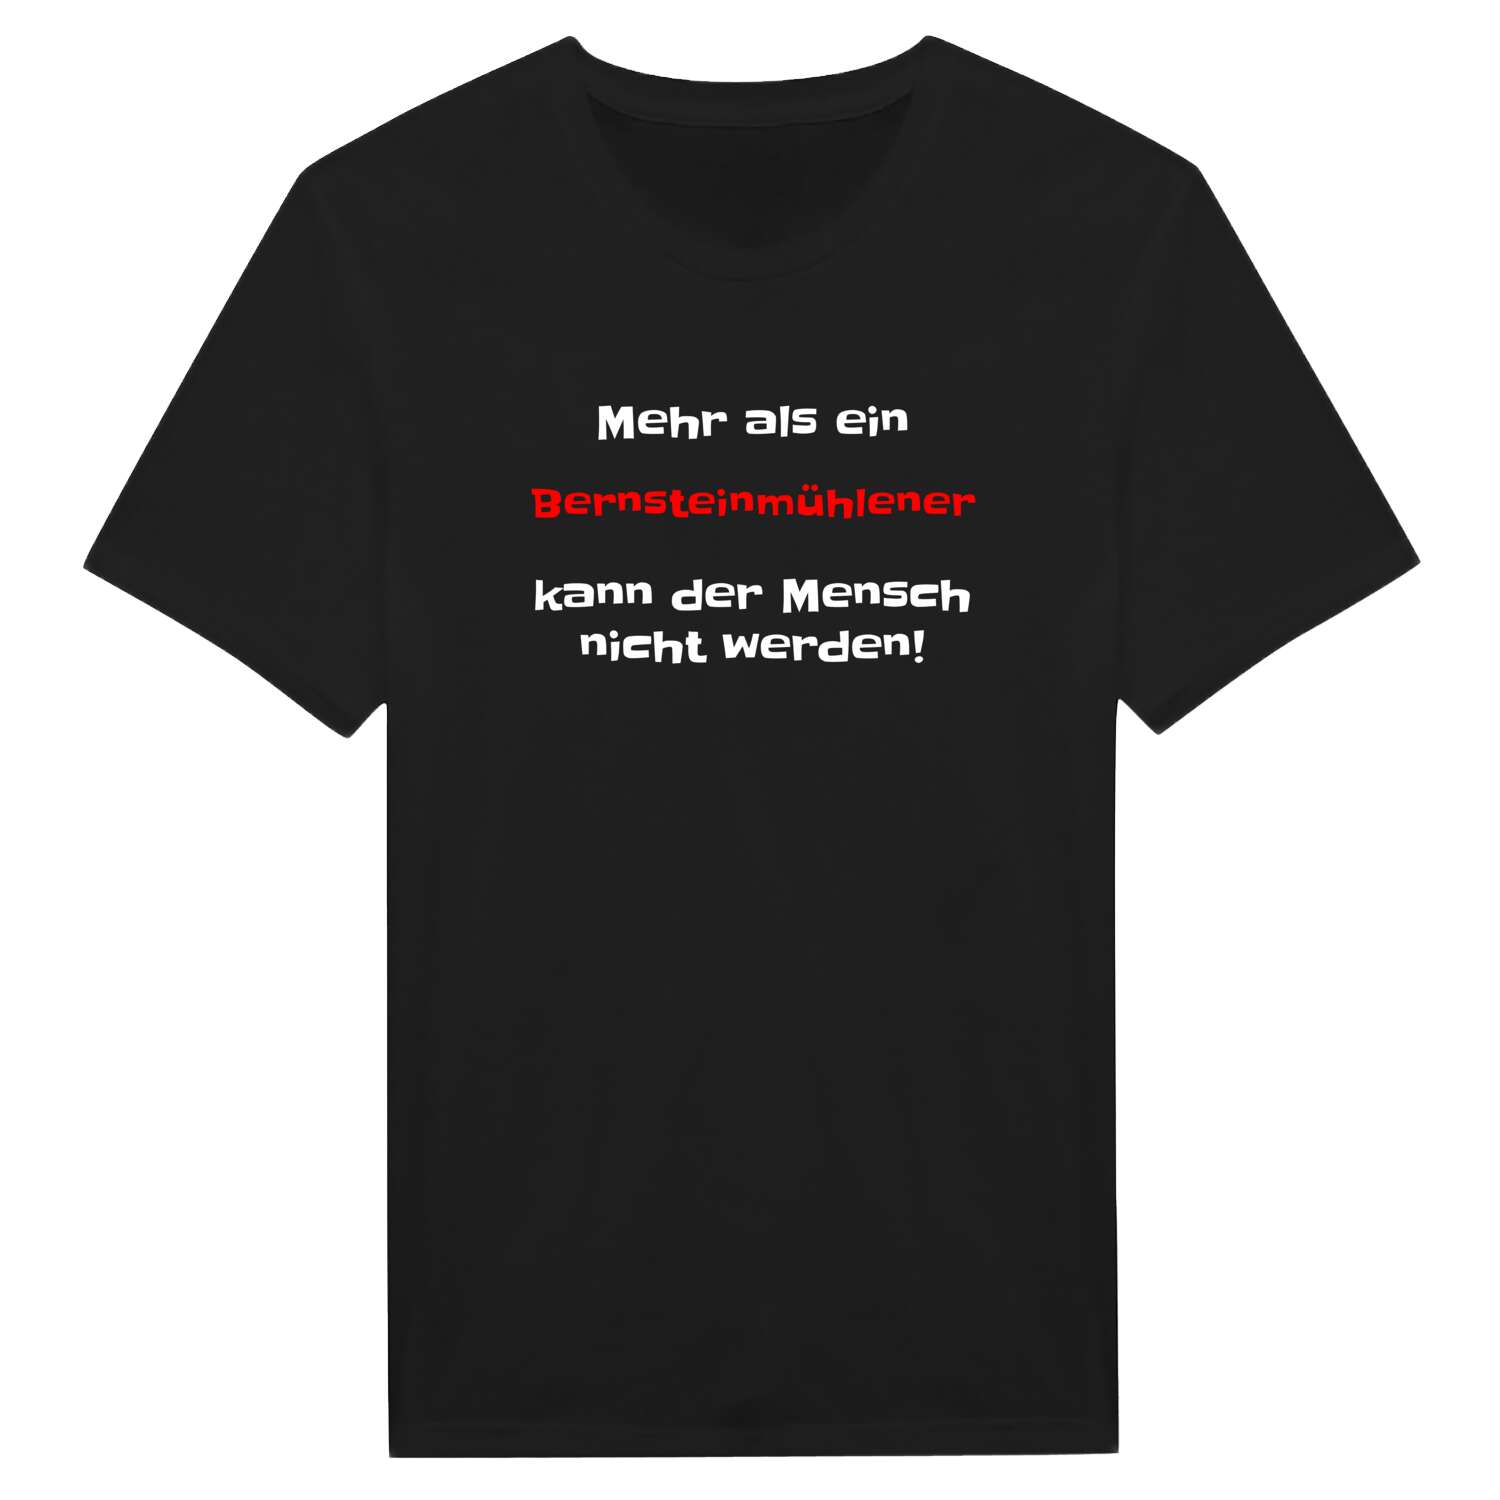 Bernsteinmühle T-Shirt »Mehr als ein«